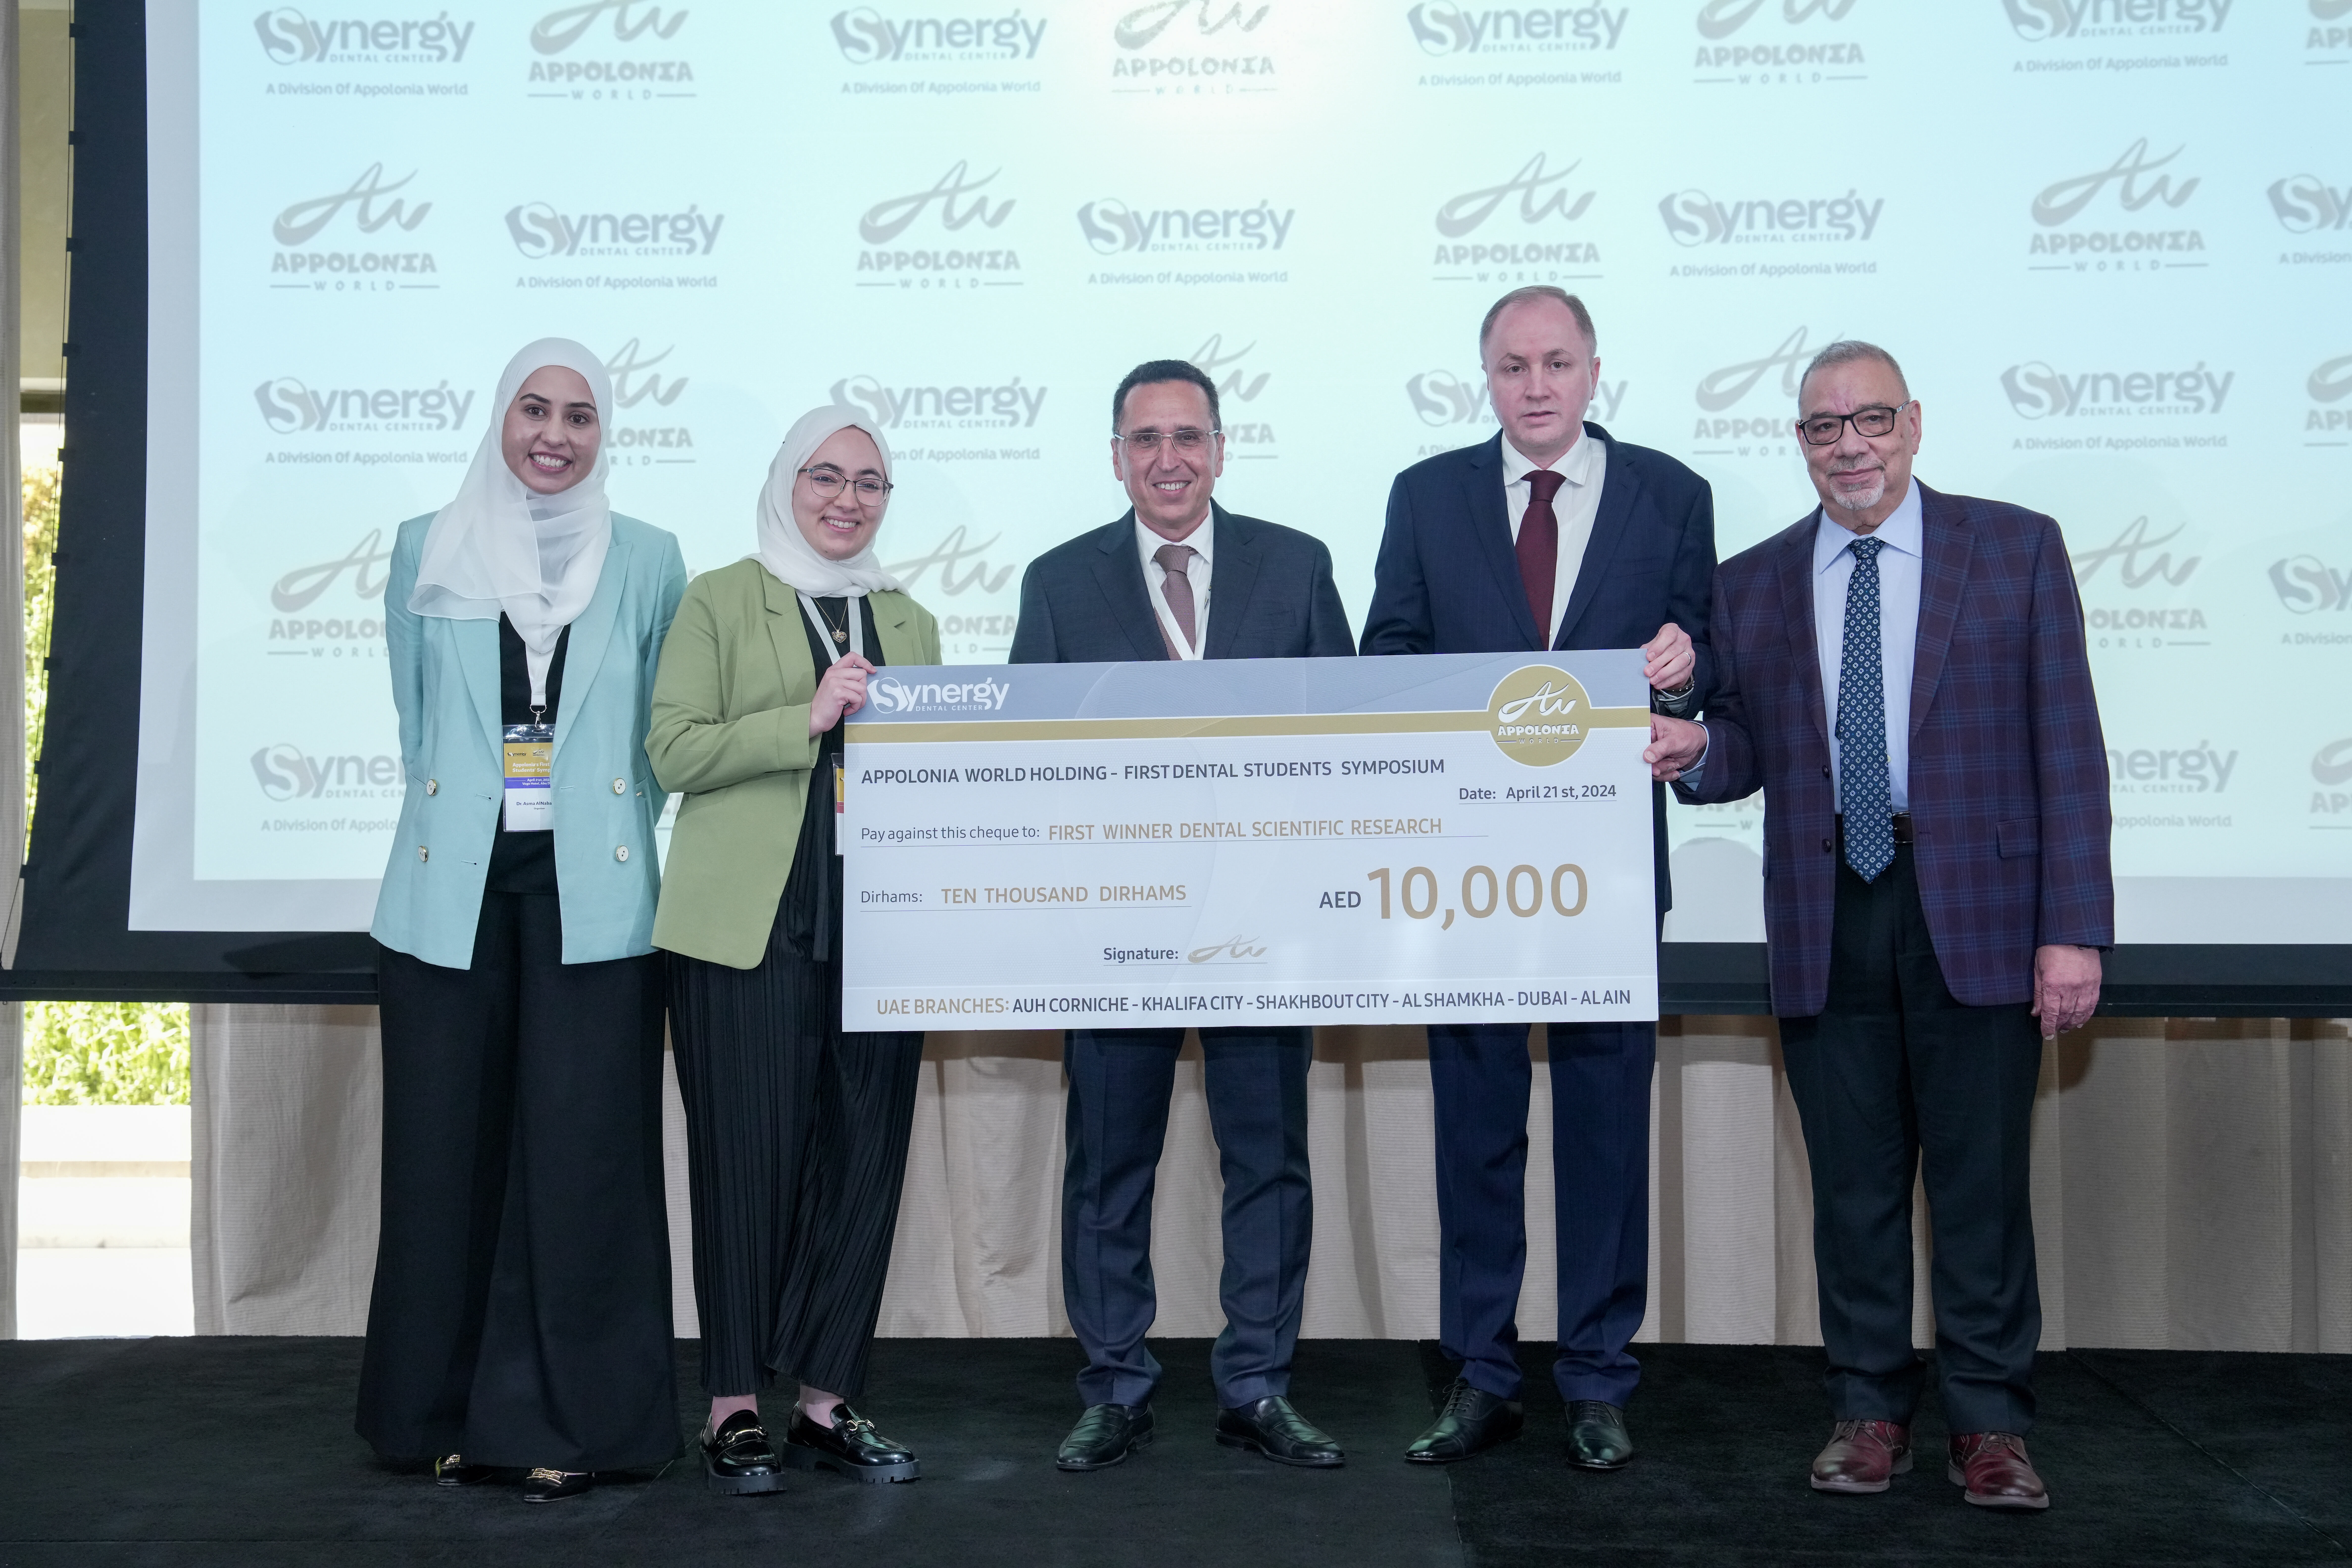 الفائز صاحب المركز الأول في (مؤتمر طلاب طب الأسنان الأول) في الإمارات العربية المتحدة تحت رعاية ودعم مجموعة عالم أبولونيا ومراكز سينرجي